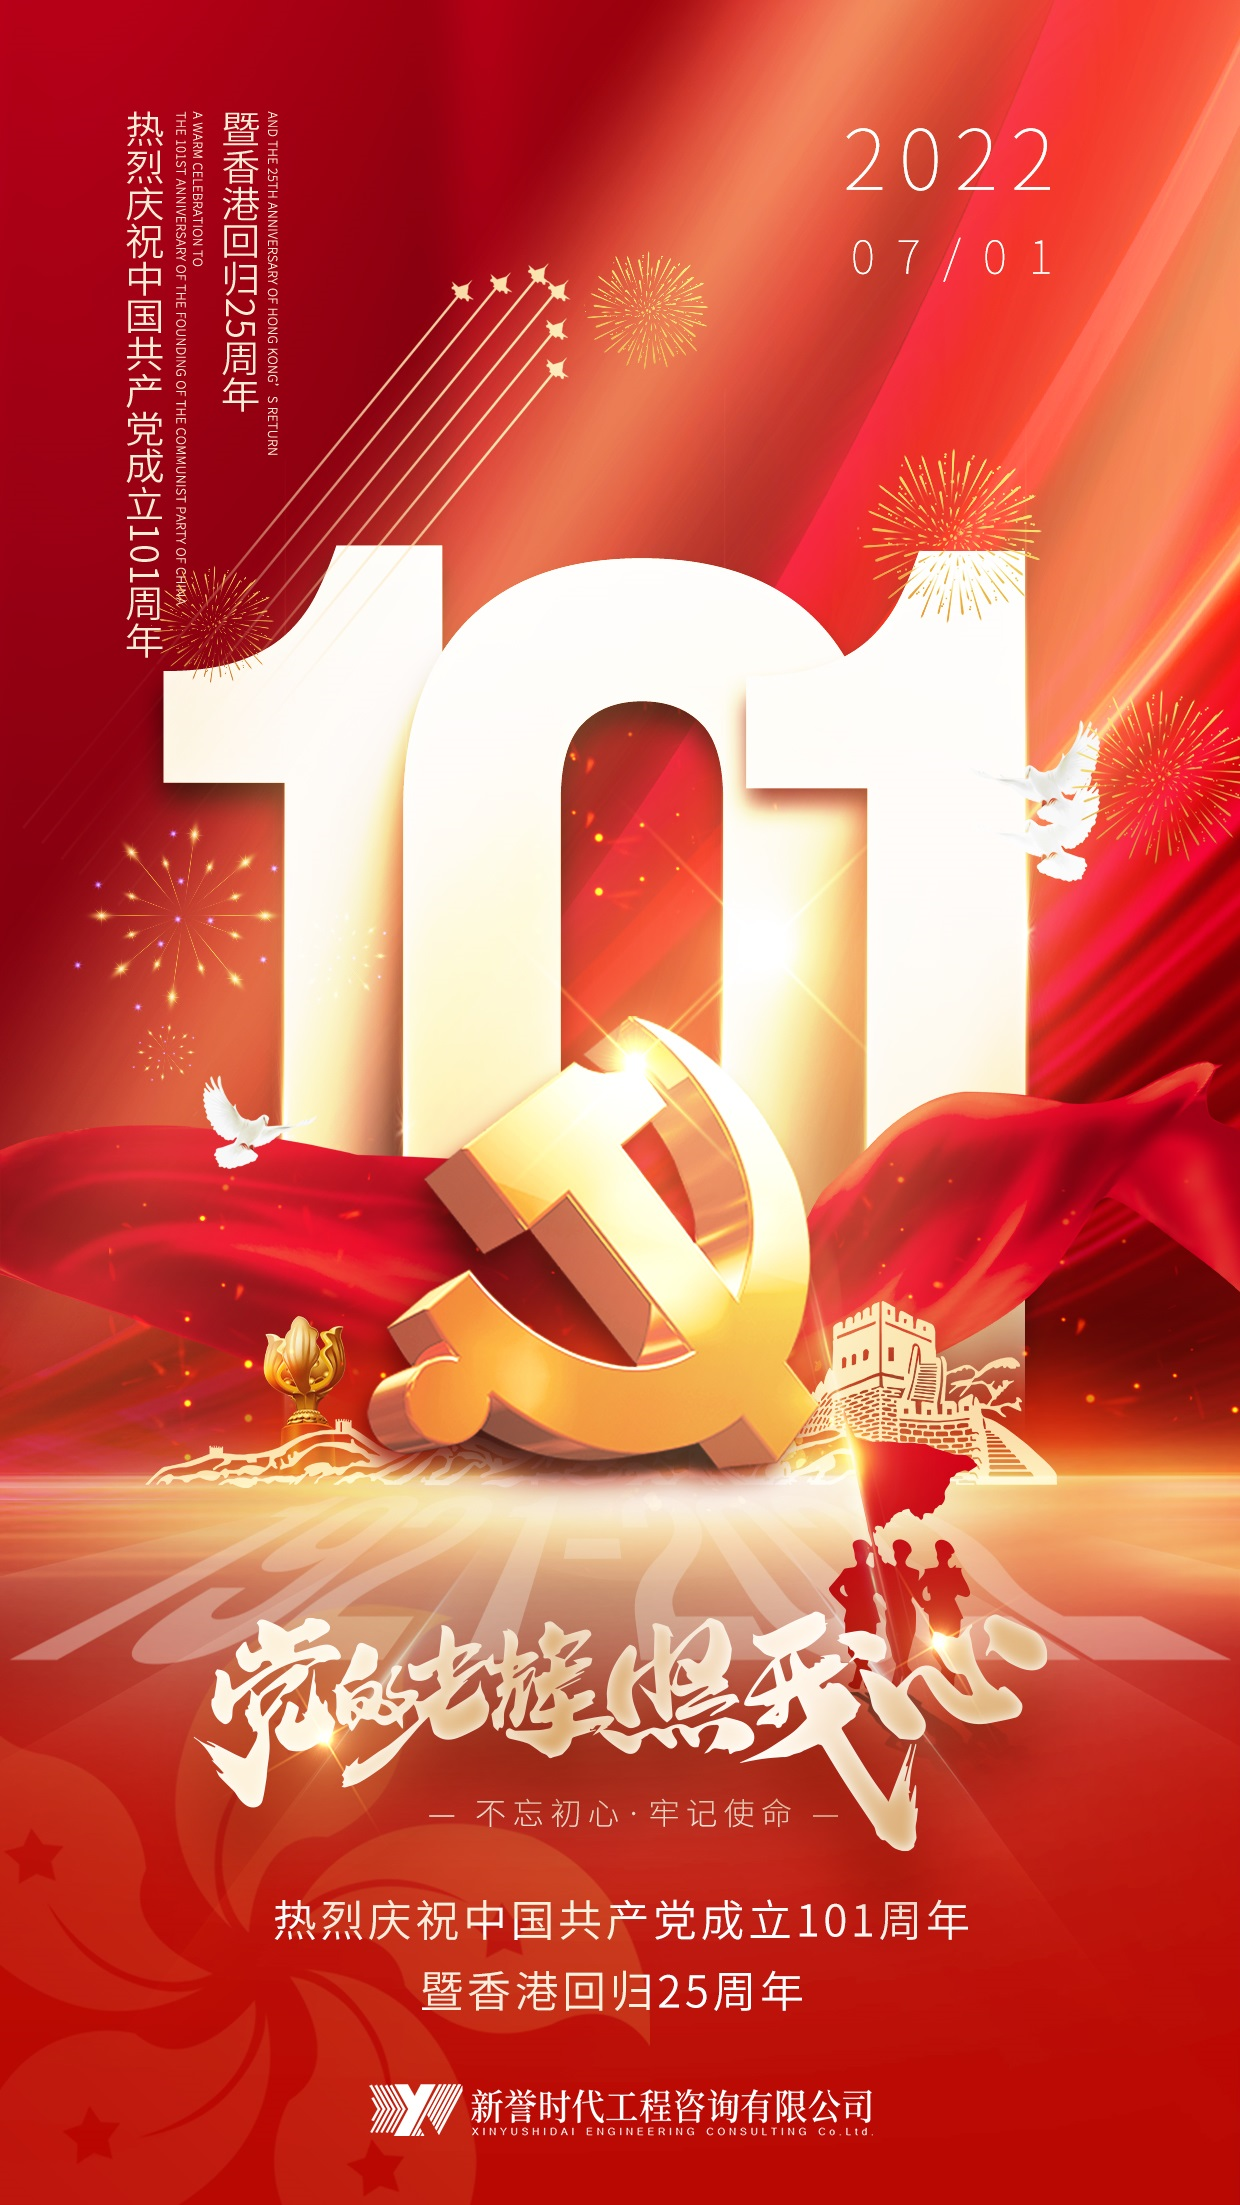 热烈庆祝中国共产党建党101周年暨香港回归25周年！